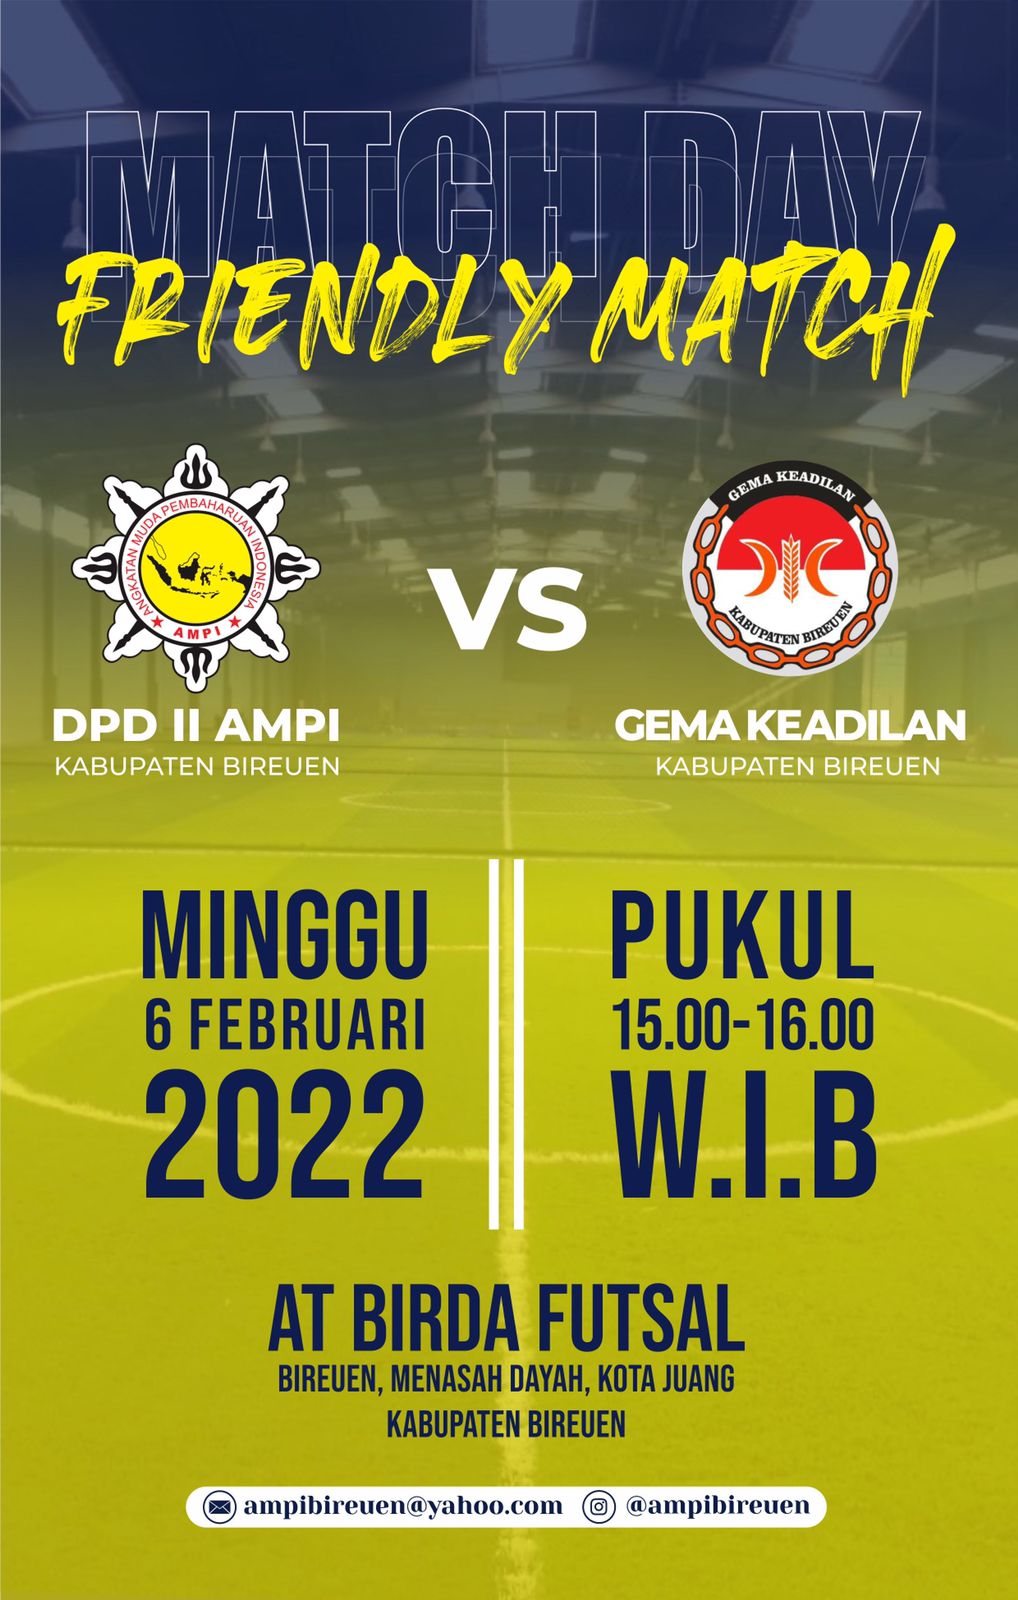 Gelar Friendly Match, GEMA FC Bireuen Ungguli DPD II AMPI Bireuen